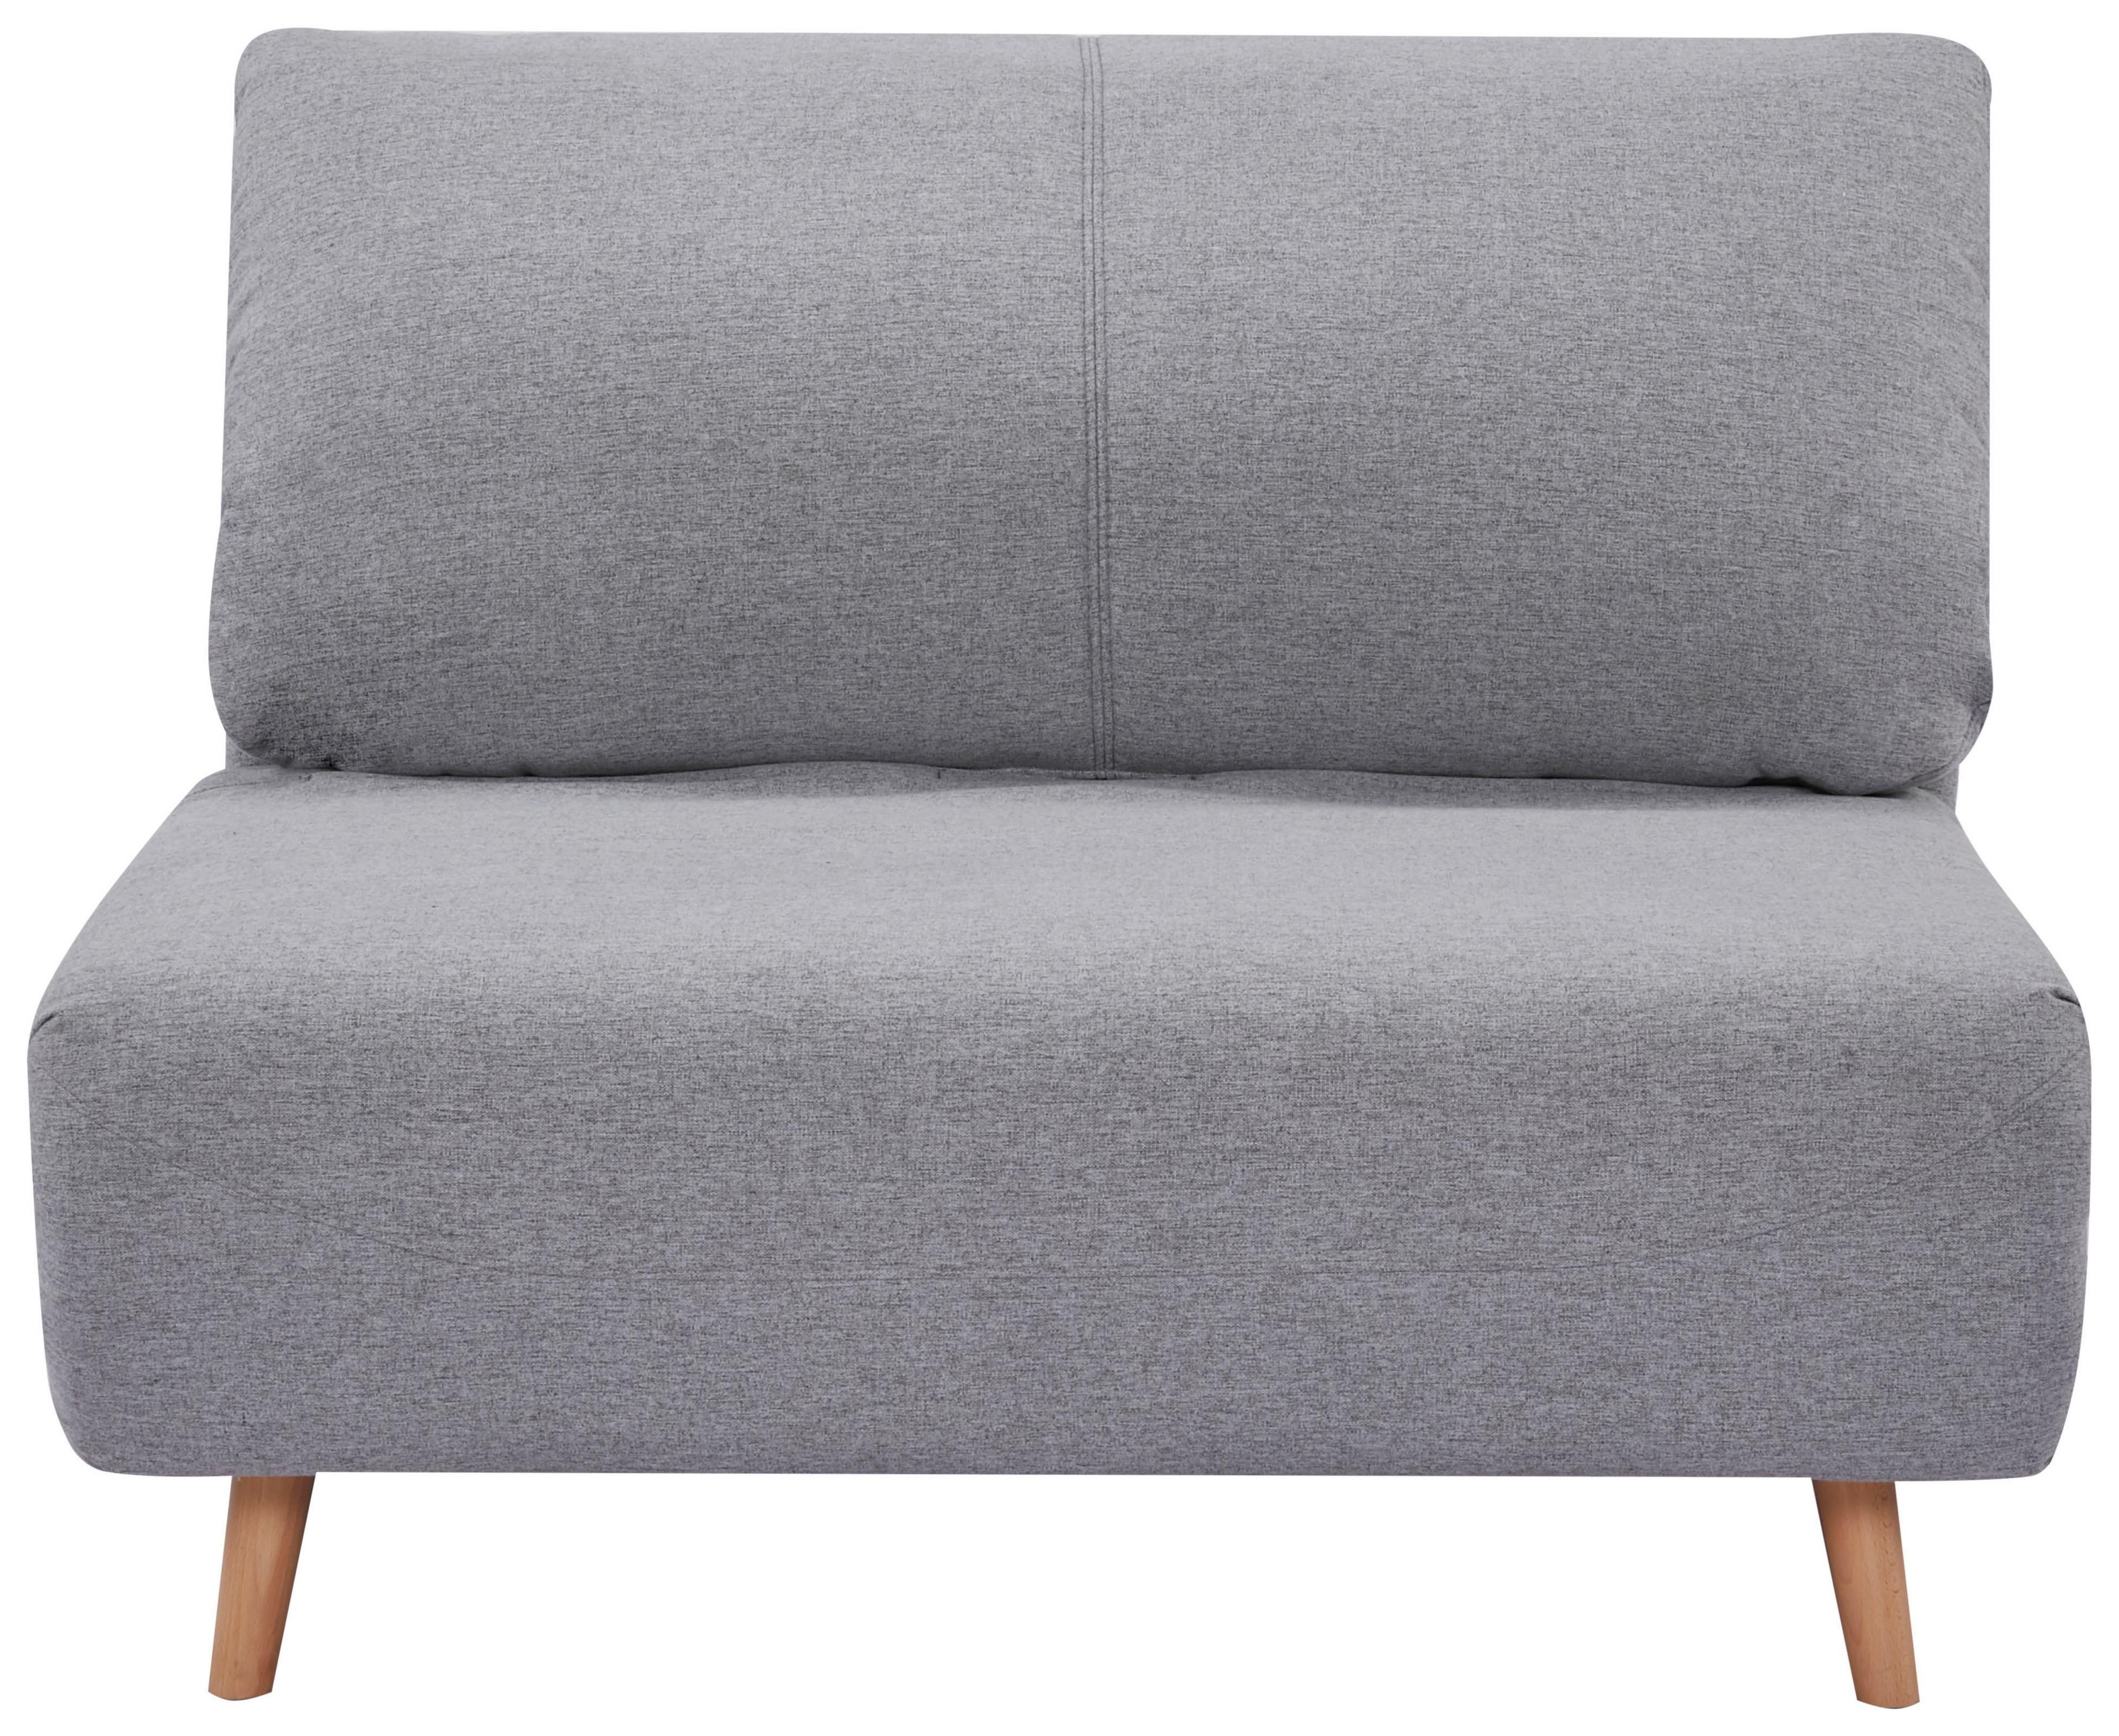 2-Sitzer-Sofa mit Schlaffunkt. Mario verstellbar Grau - Naturfarben/Grau, MODERN, Holz/Textil (192/100cm) - Ondega